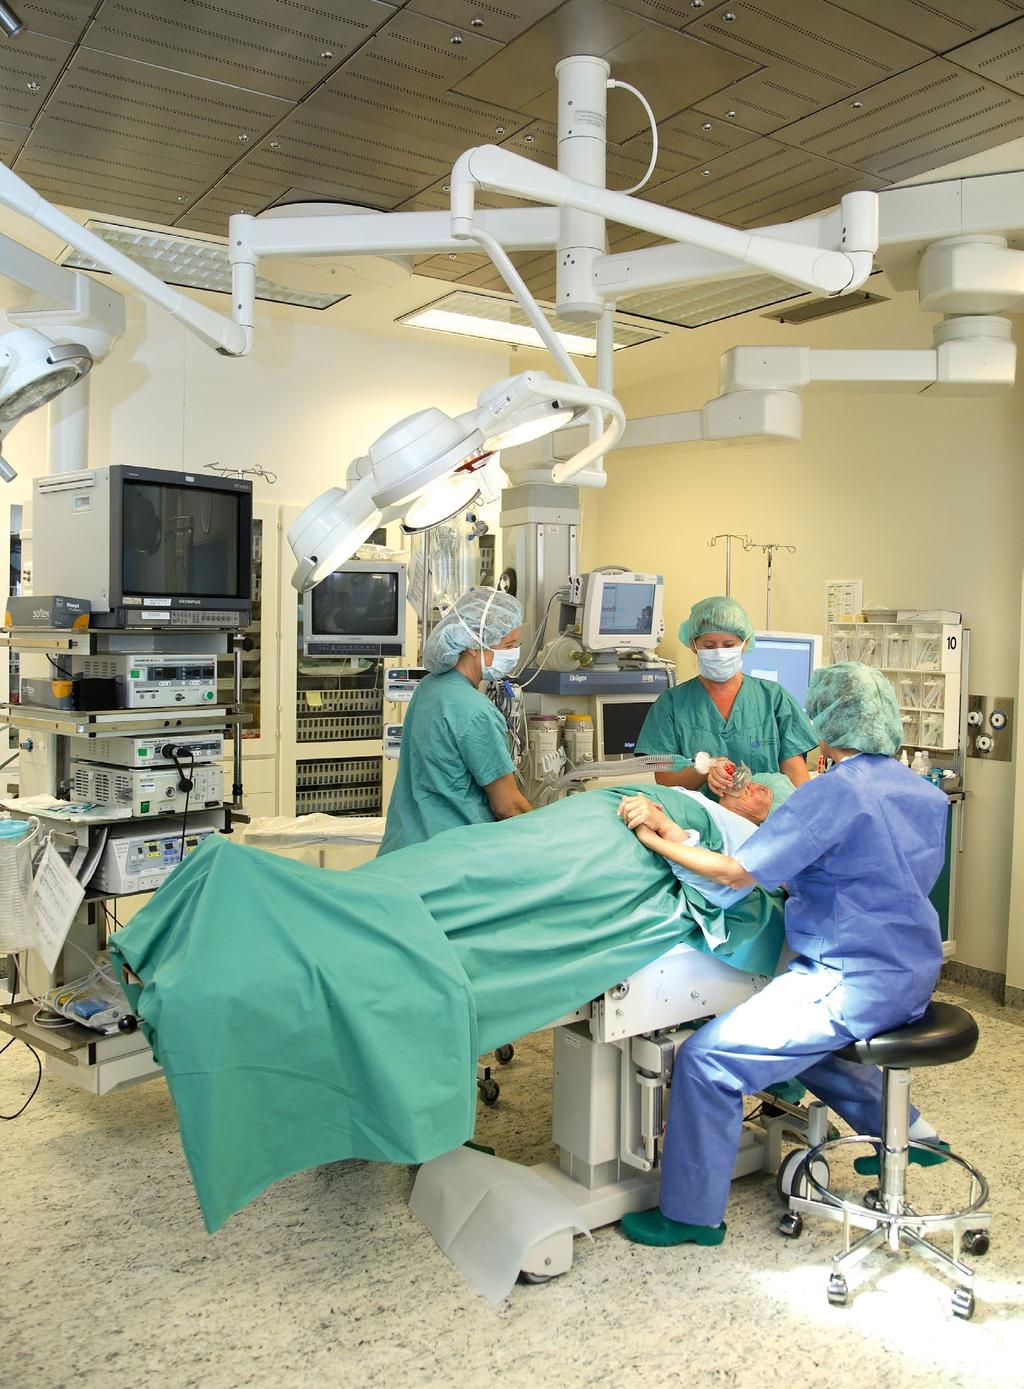 På operasjonsstua Gunvor skal snart opereres. Det er mye utstyr som blinker og lager lyder på operasjonsstua. Alle som jobber der, er kledd i grønt tøy.